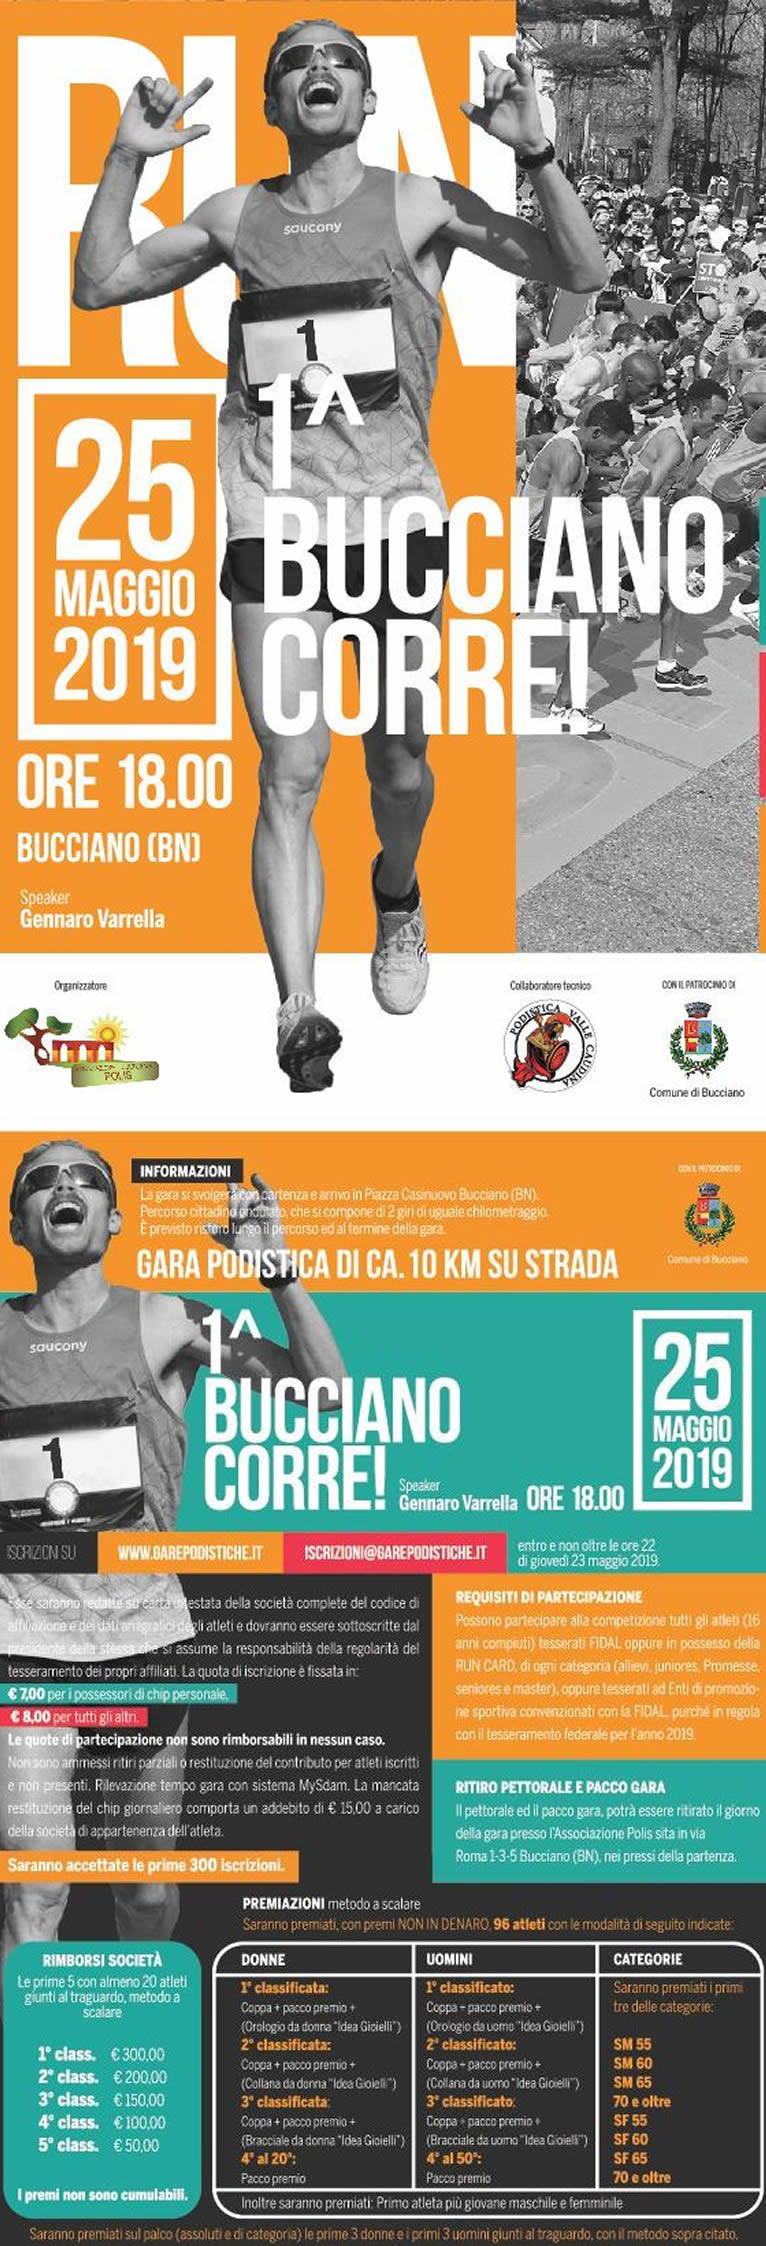 Bucciano Corre 2019 gara podistica